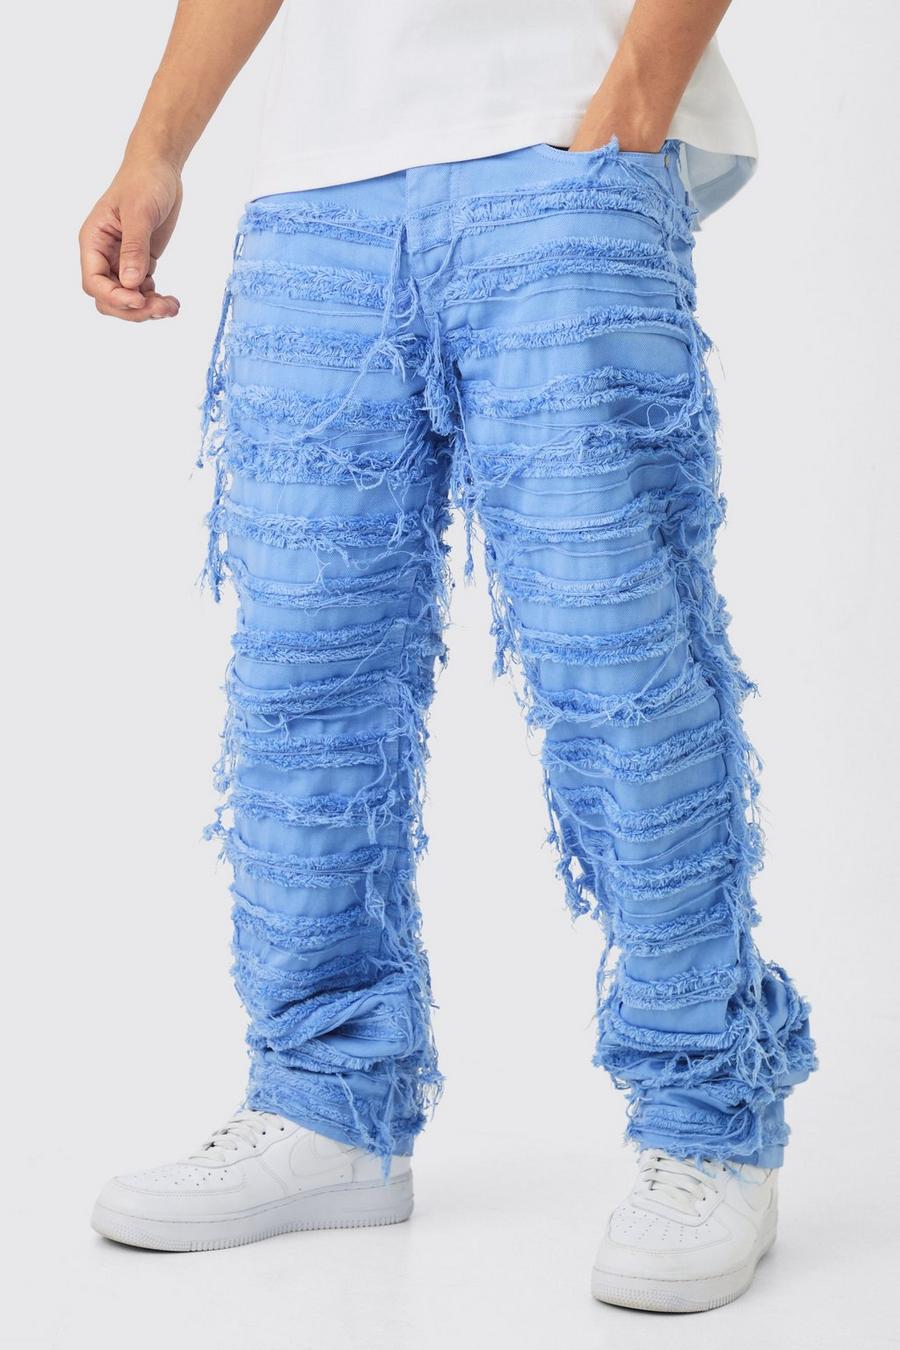 Lockere blaue Jeans mit Rissen, Mid blue